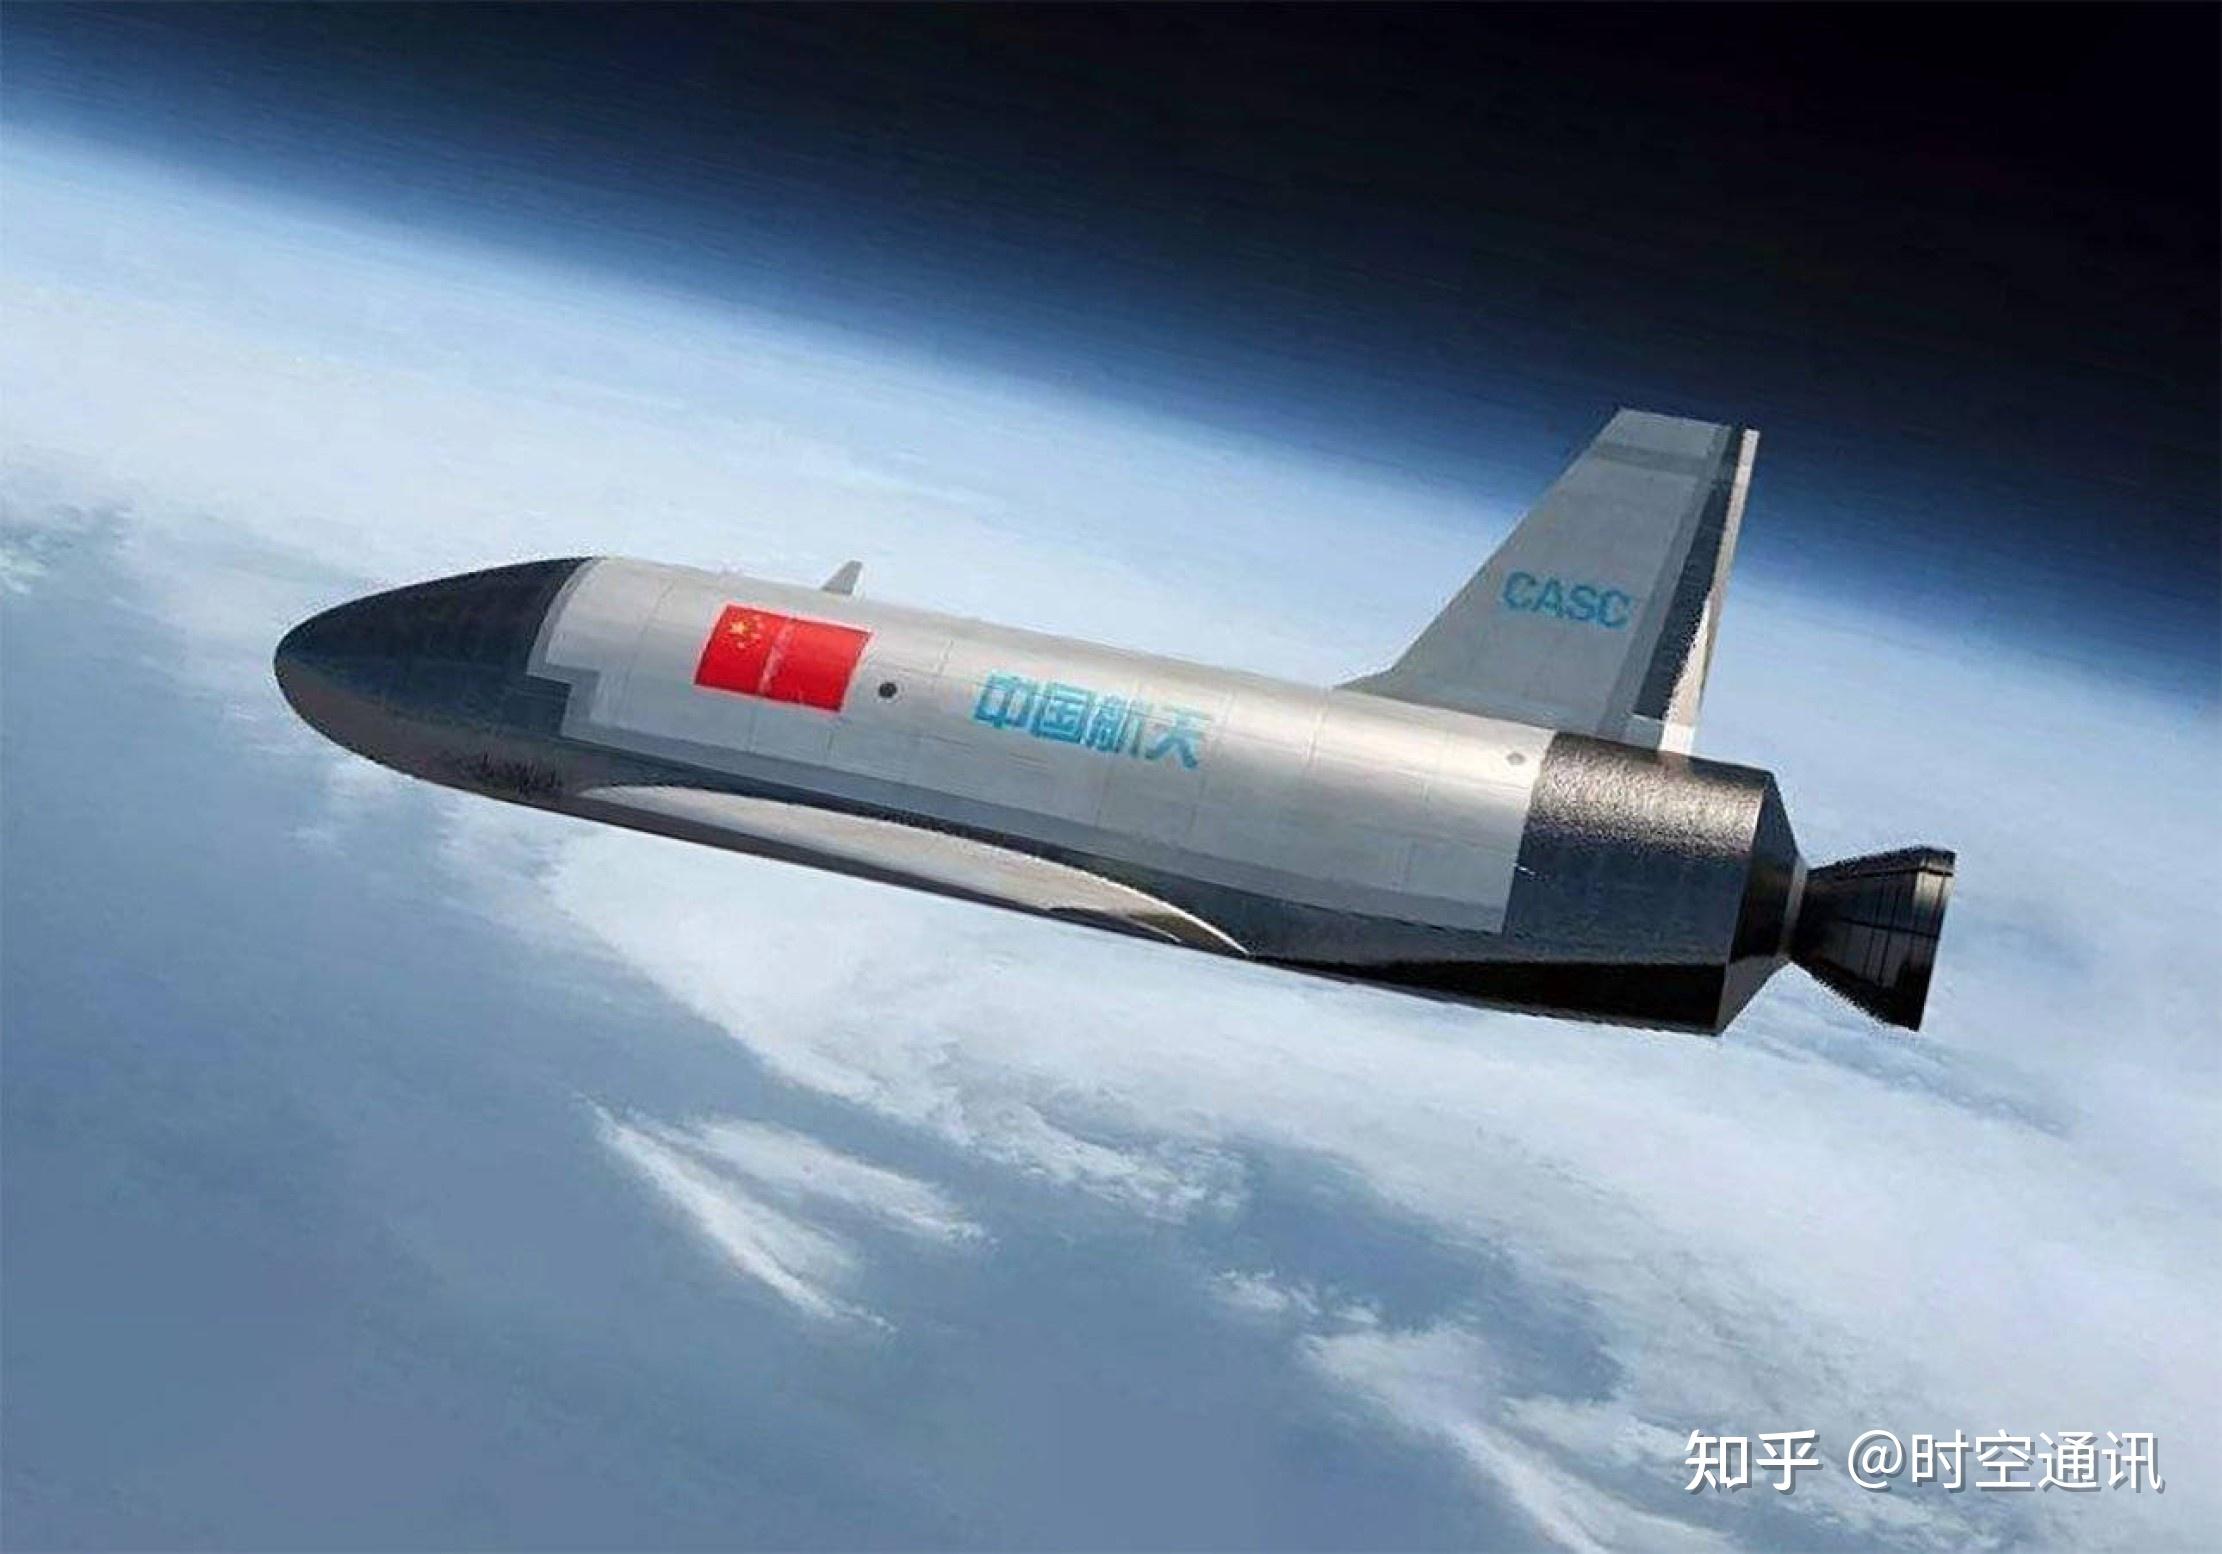 中国试验绝密空天飞机,为啥能够被荷兰博士准确预测,难道泄密了?